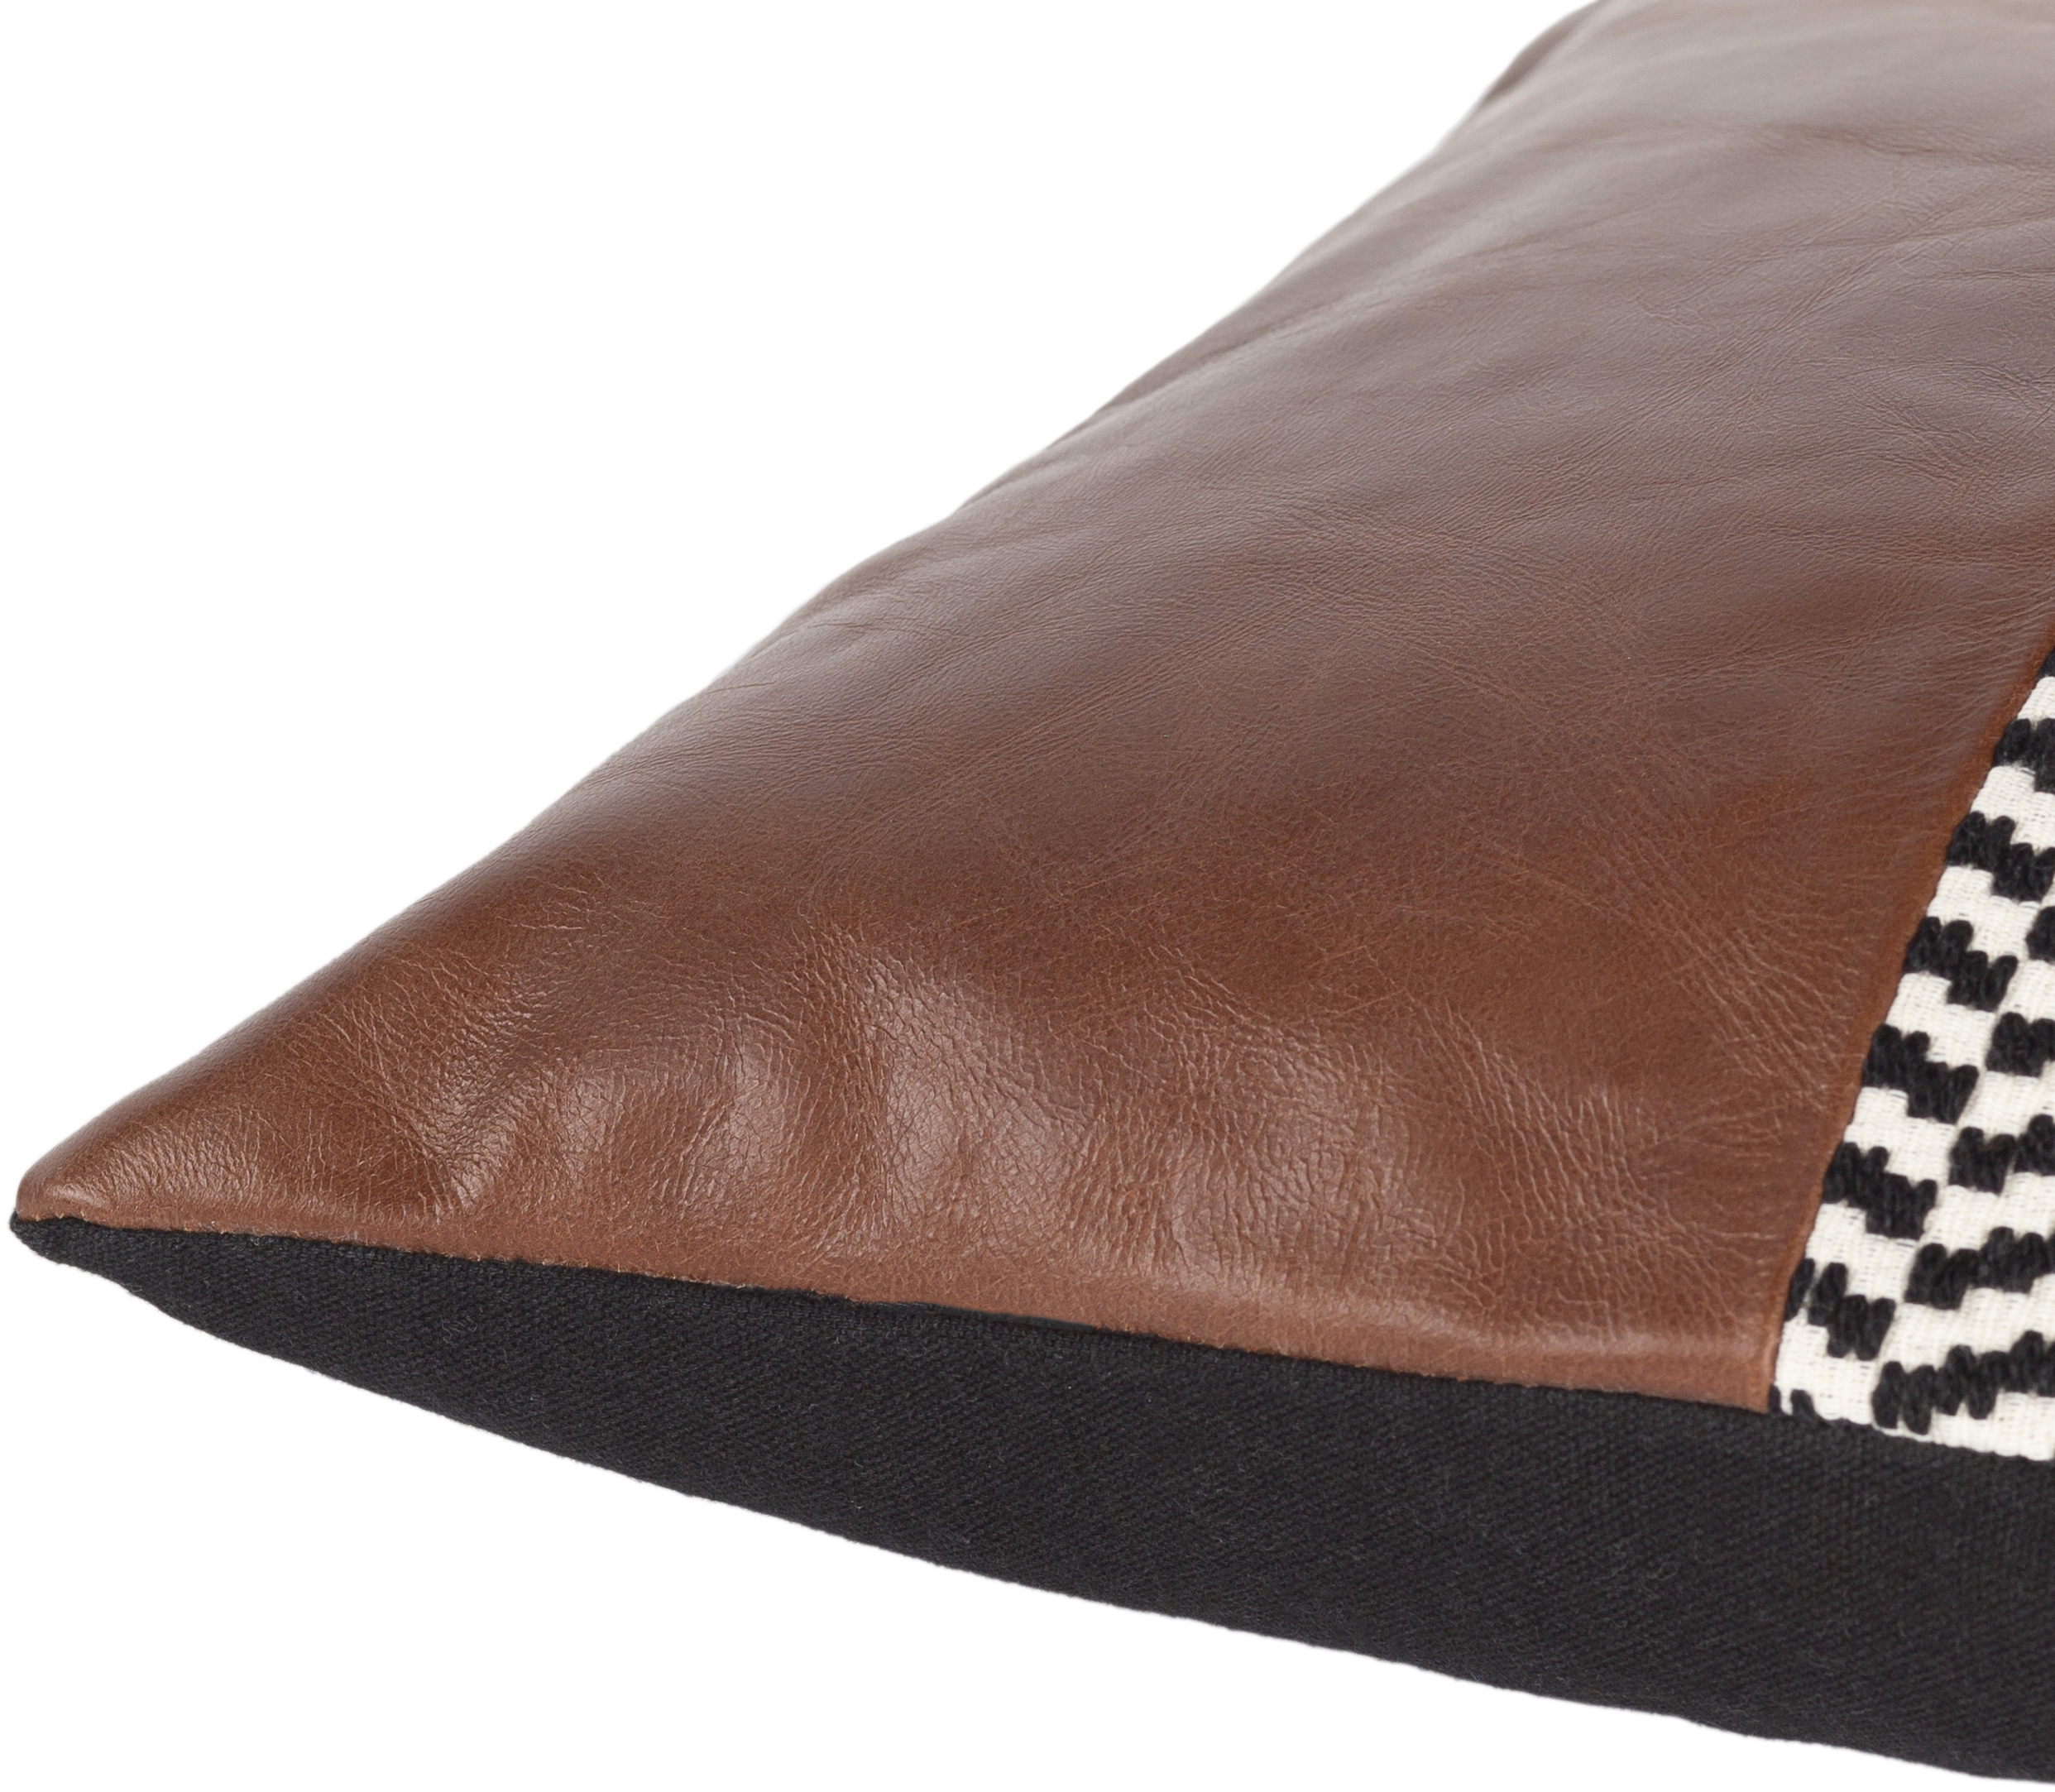 Fiona Leather Chevron Lumbar Pillow, 20" x 13" - Image 2